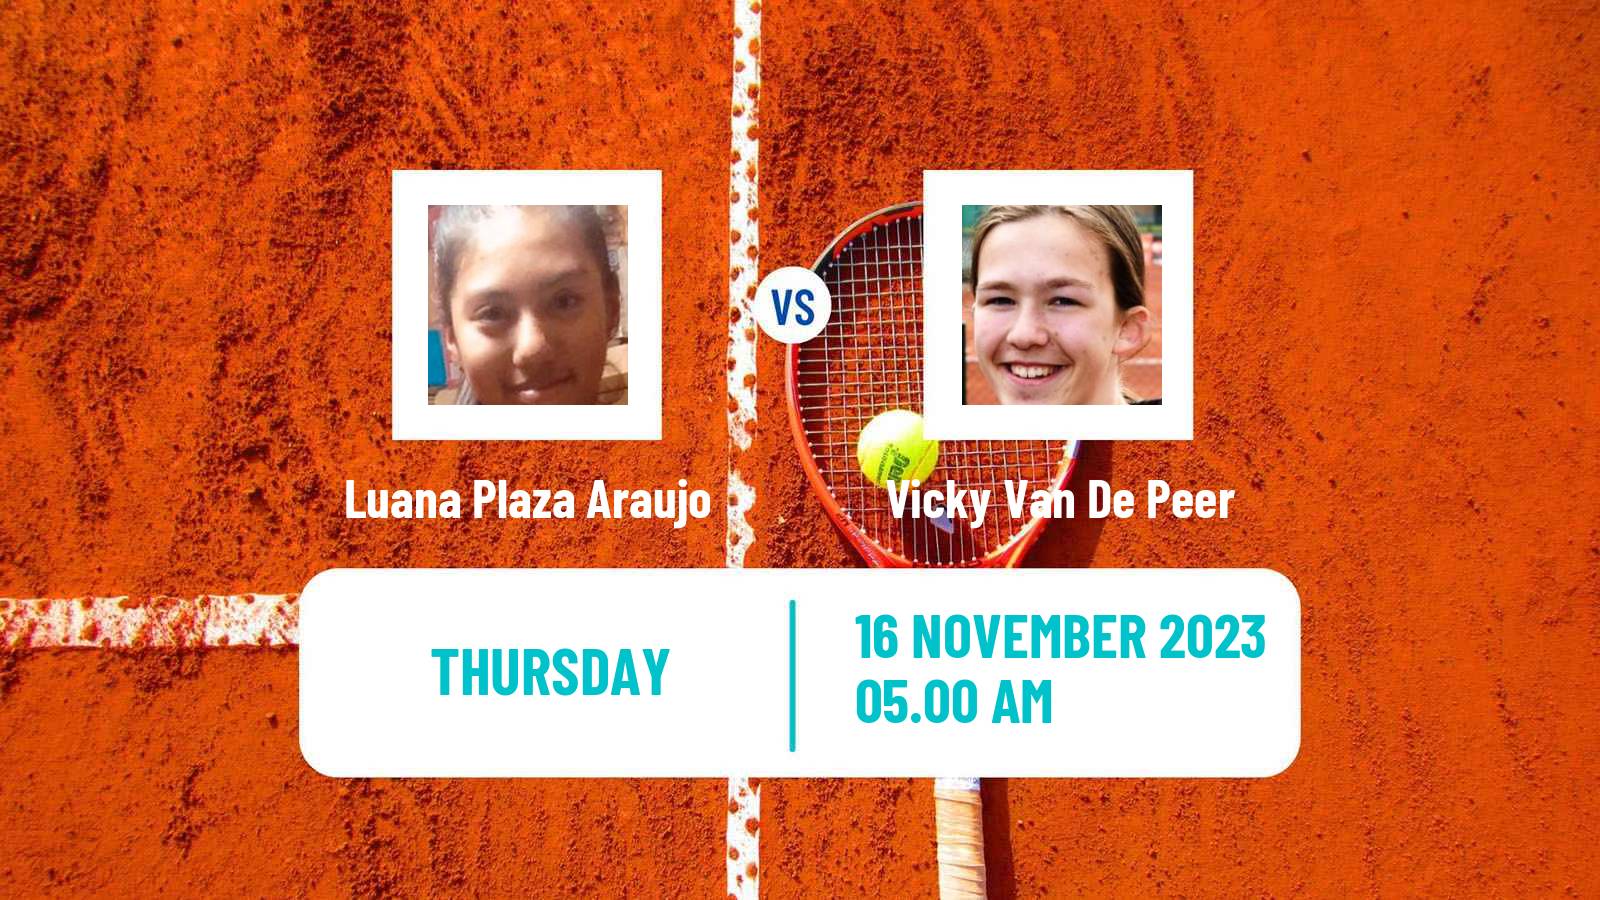 Tennis ITF W15 Monastir 40 Women Luana Plaza Araujo - Vicky Van De Peer